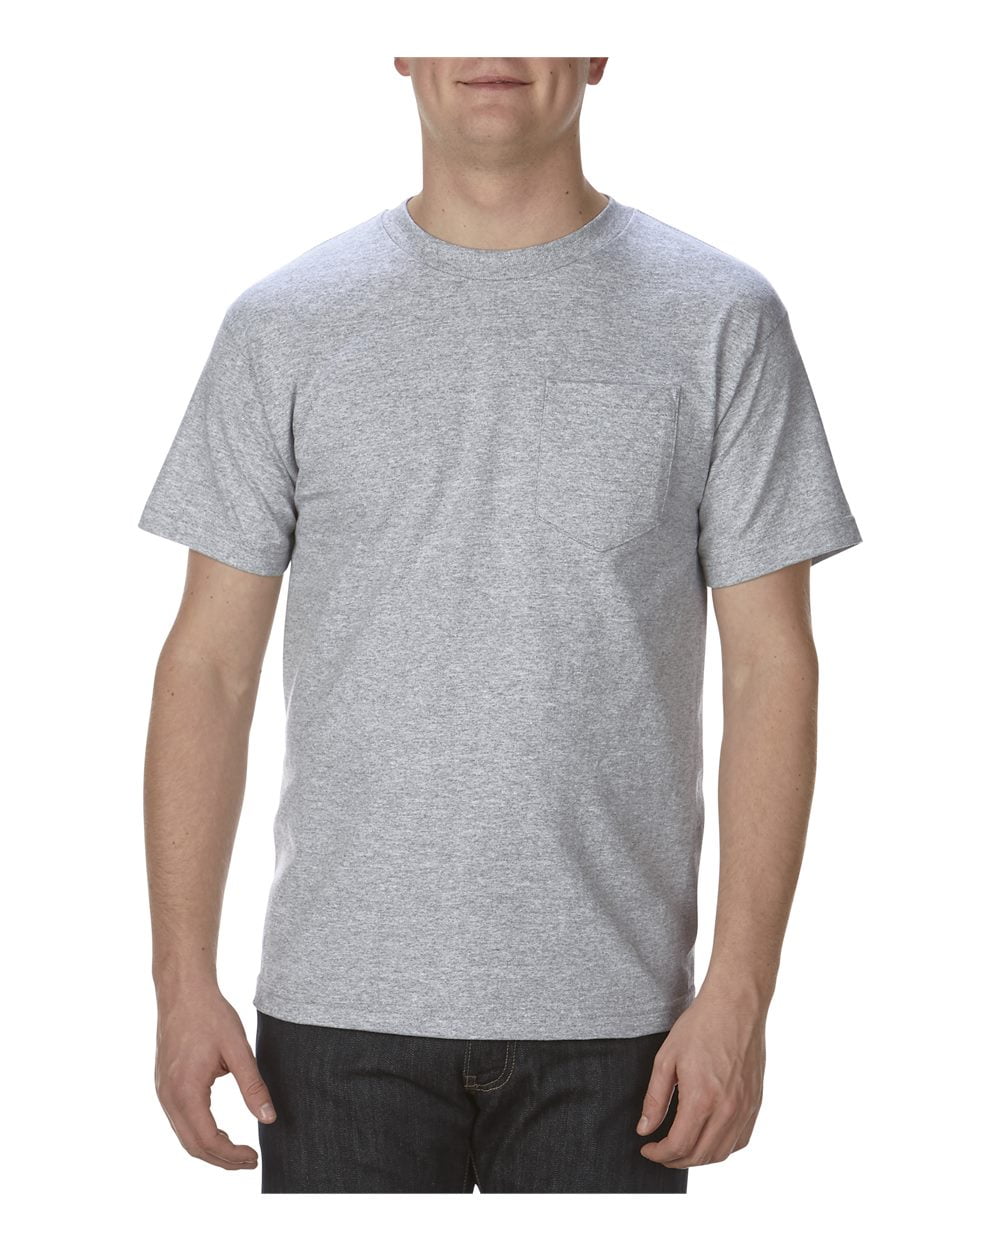 ALSTYLE - Classic Pocket T-Shirt - Walmart.com